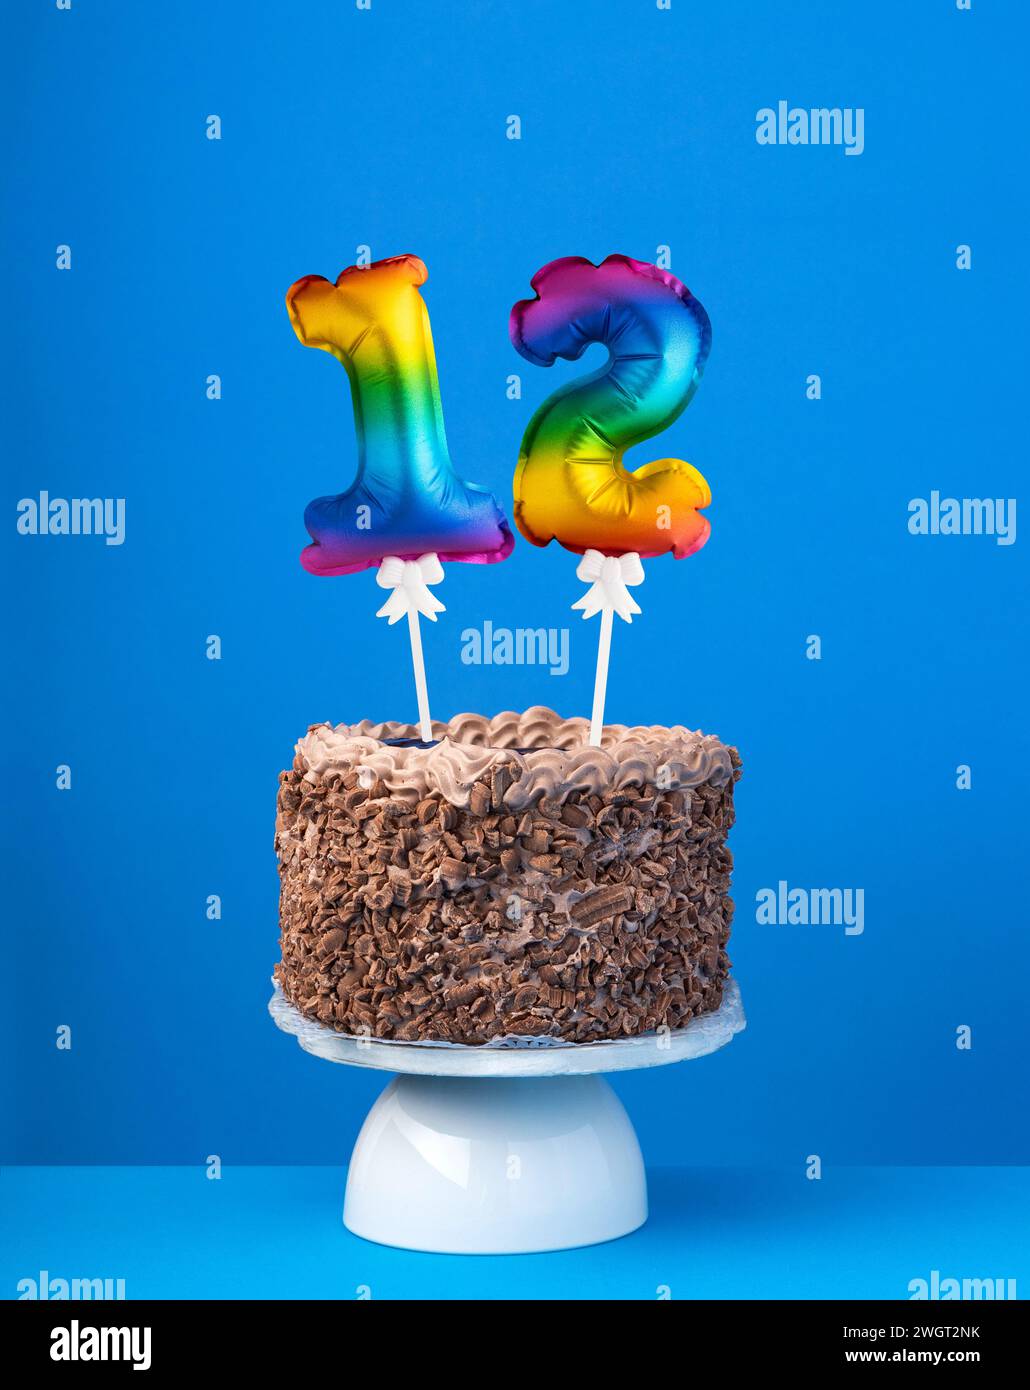 Torta di compleanno con palloncino numero 12 - biglietto d'invito su sfondo blu Foto Stock